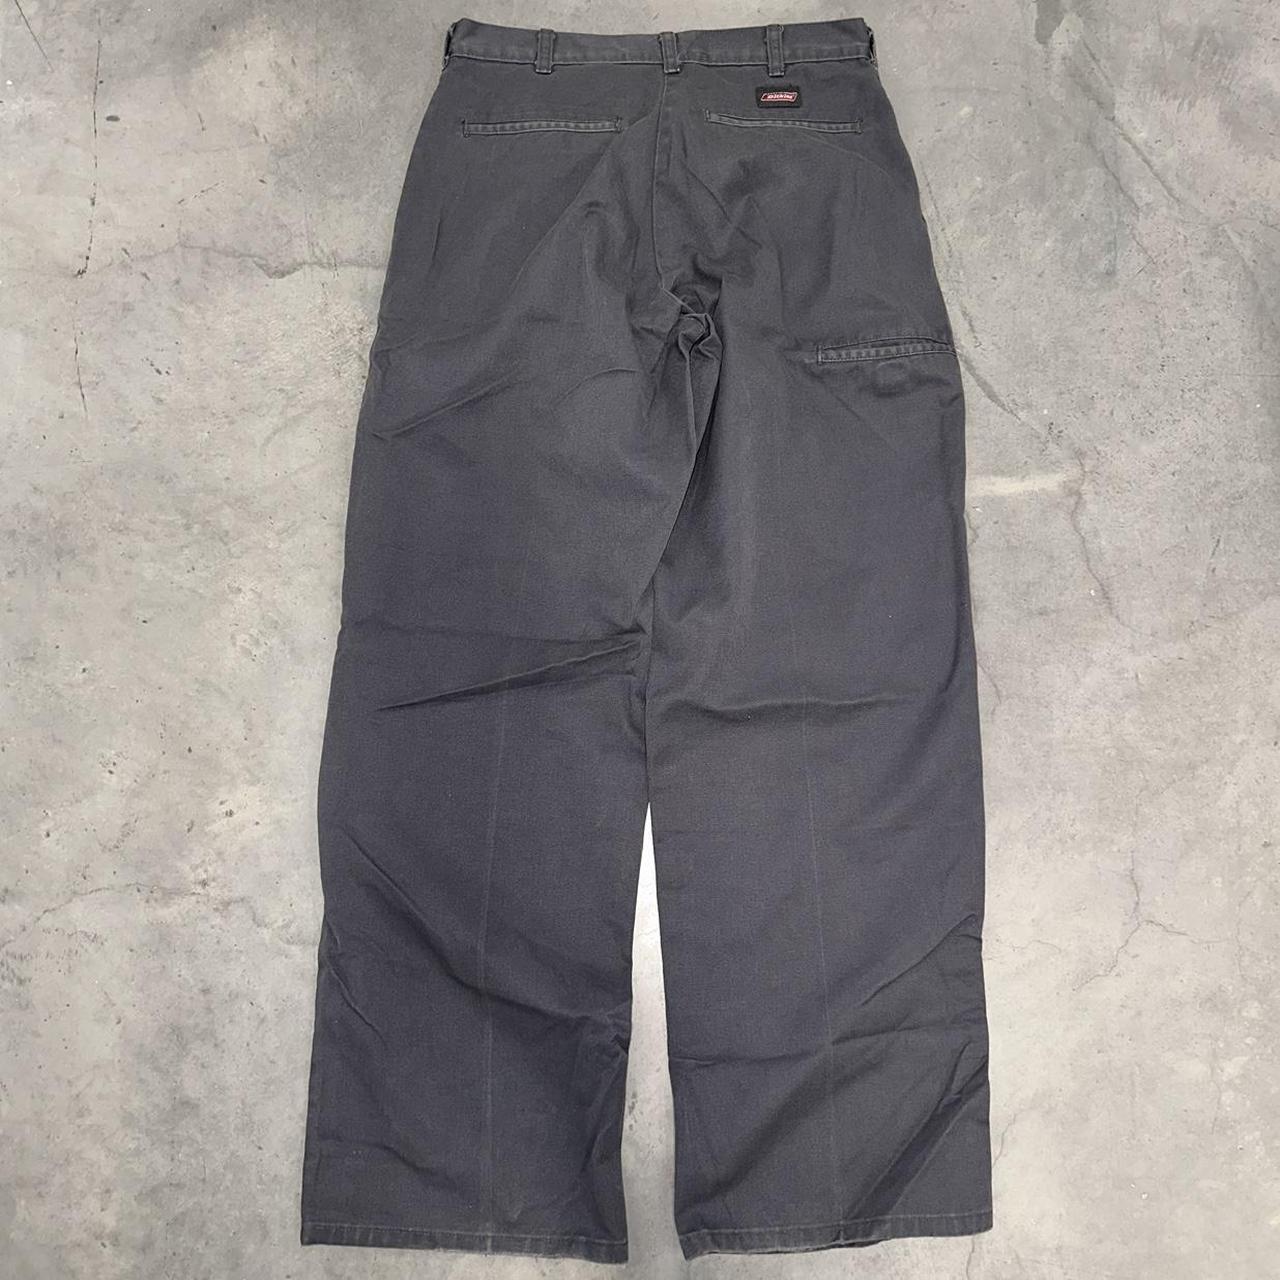 Vintage Gray Dickies Pants Sz 30x32 Good Worn Depop